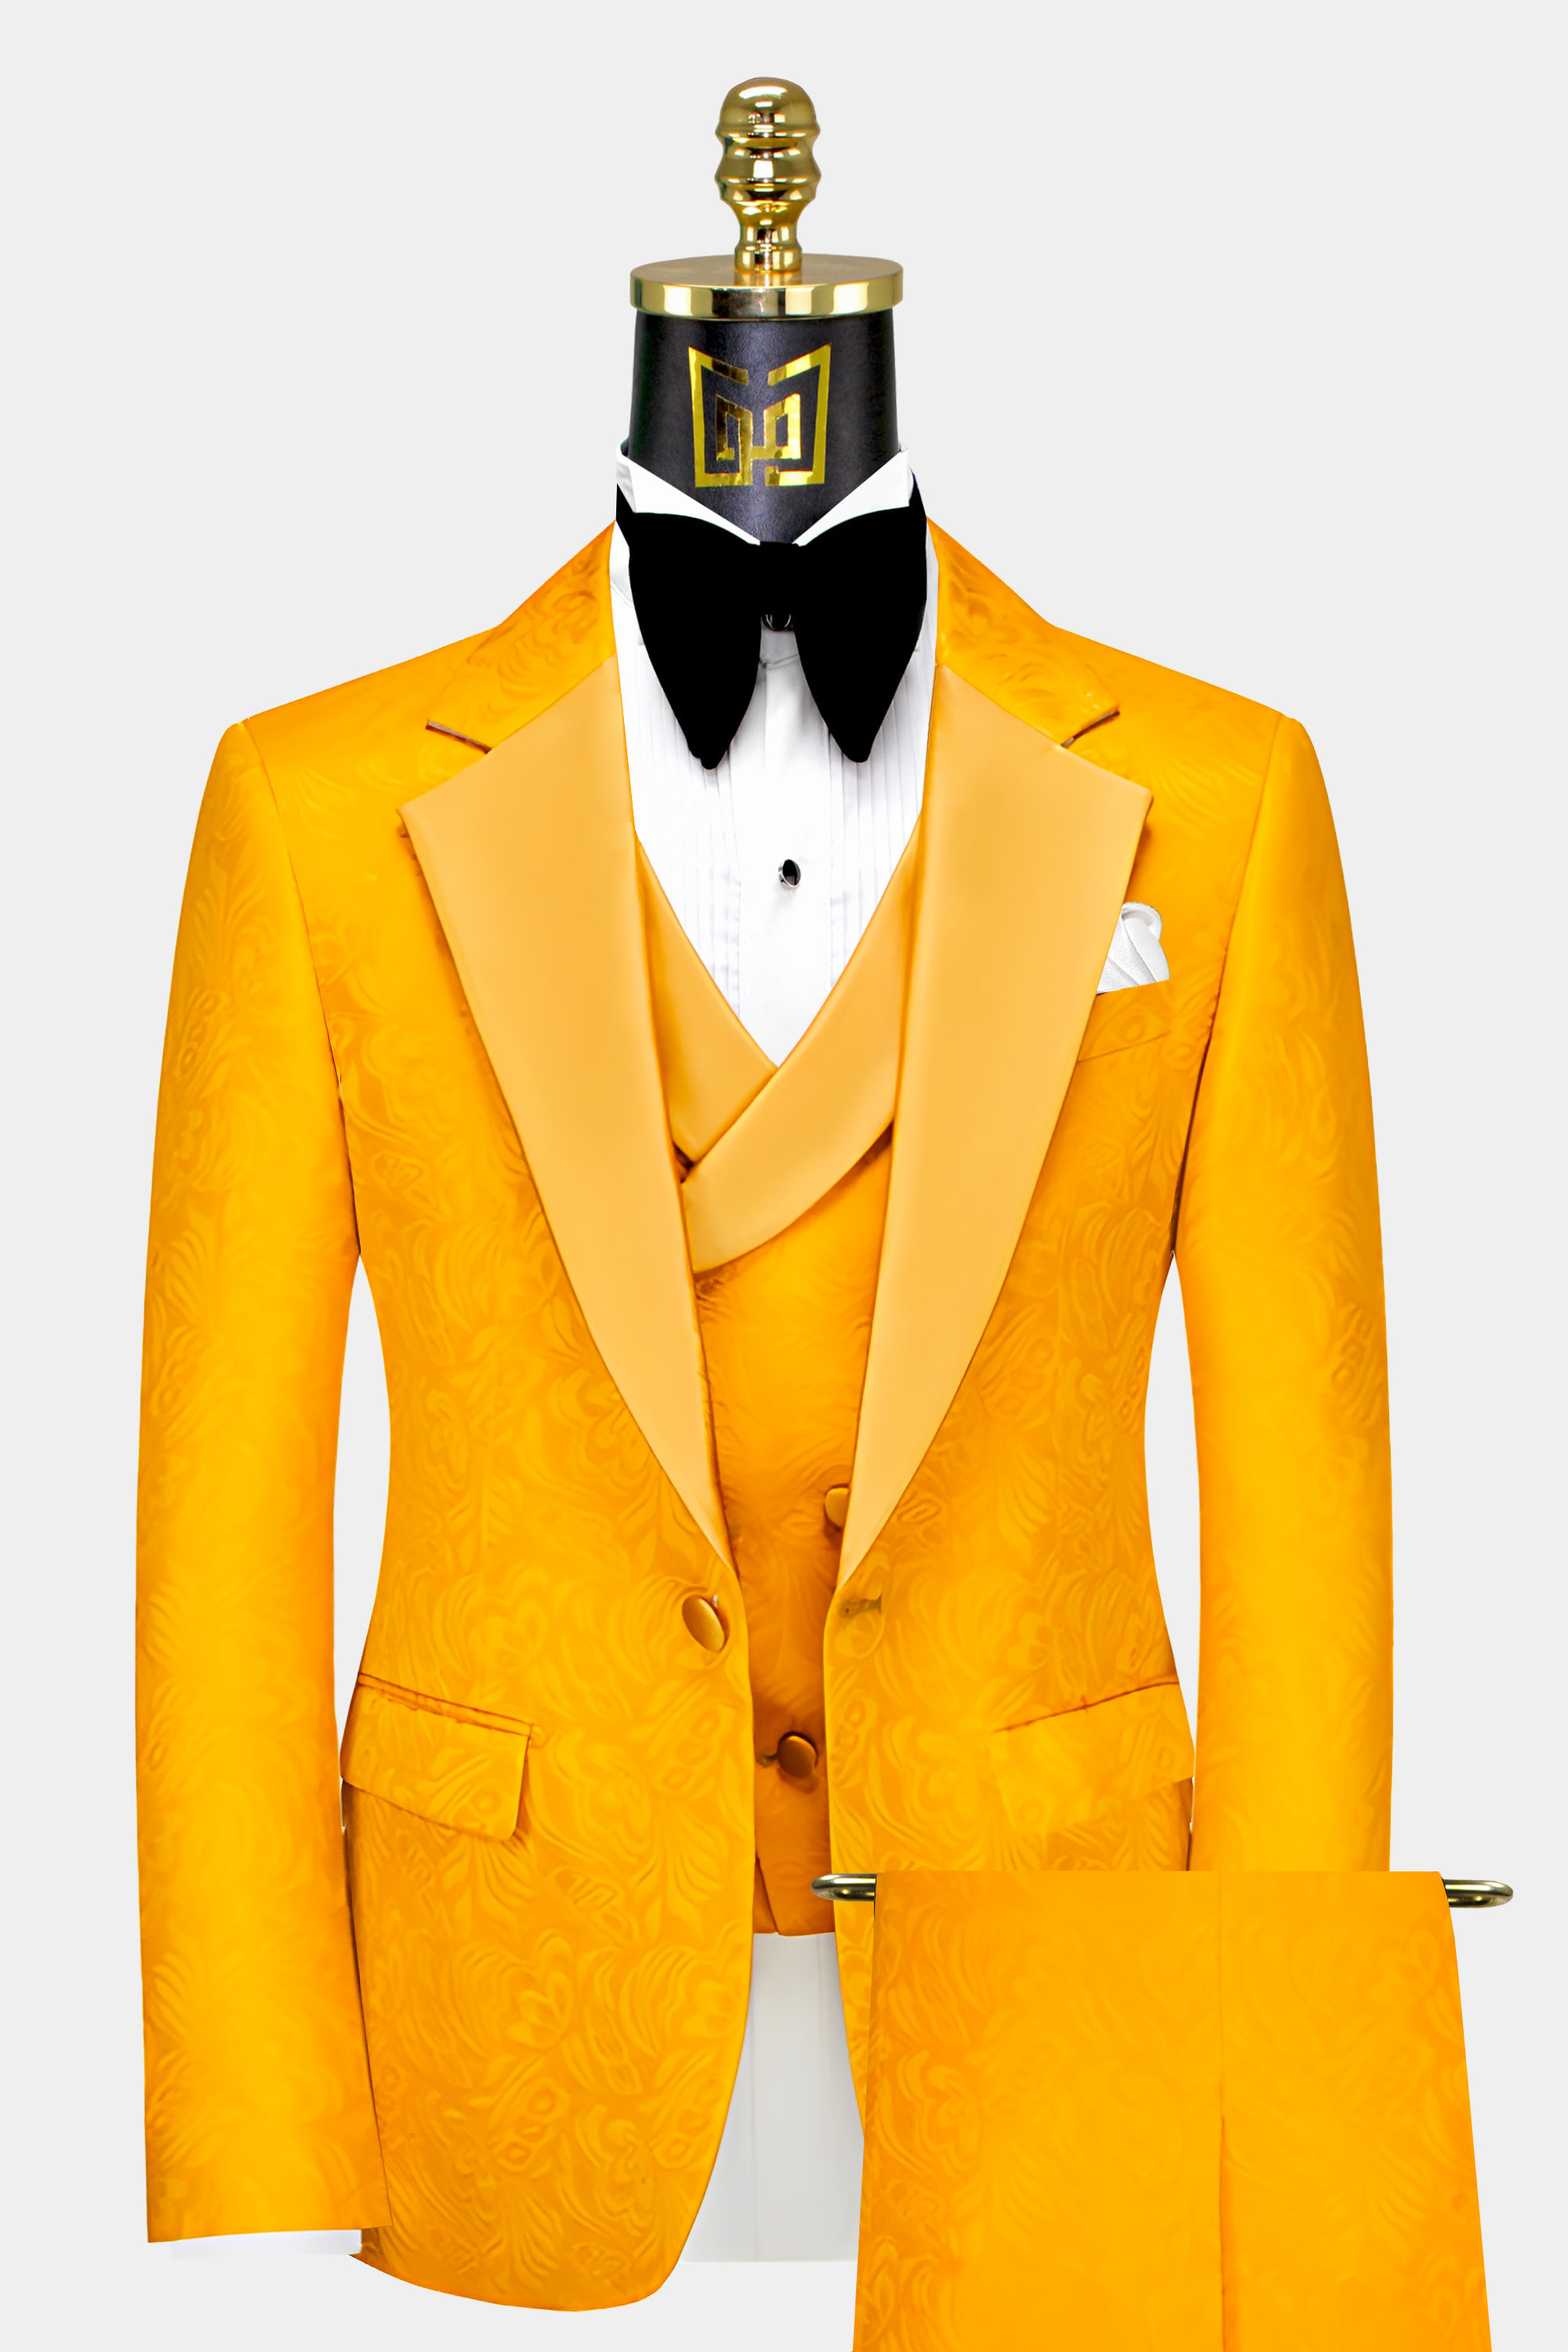 Mens-Gold-Floral-Tuxedo-Prom-Groom-Wedding-Suit-For-Men-from-Gentlemansguru.com